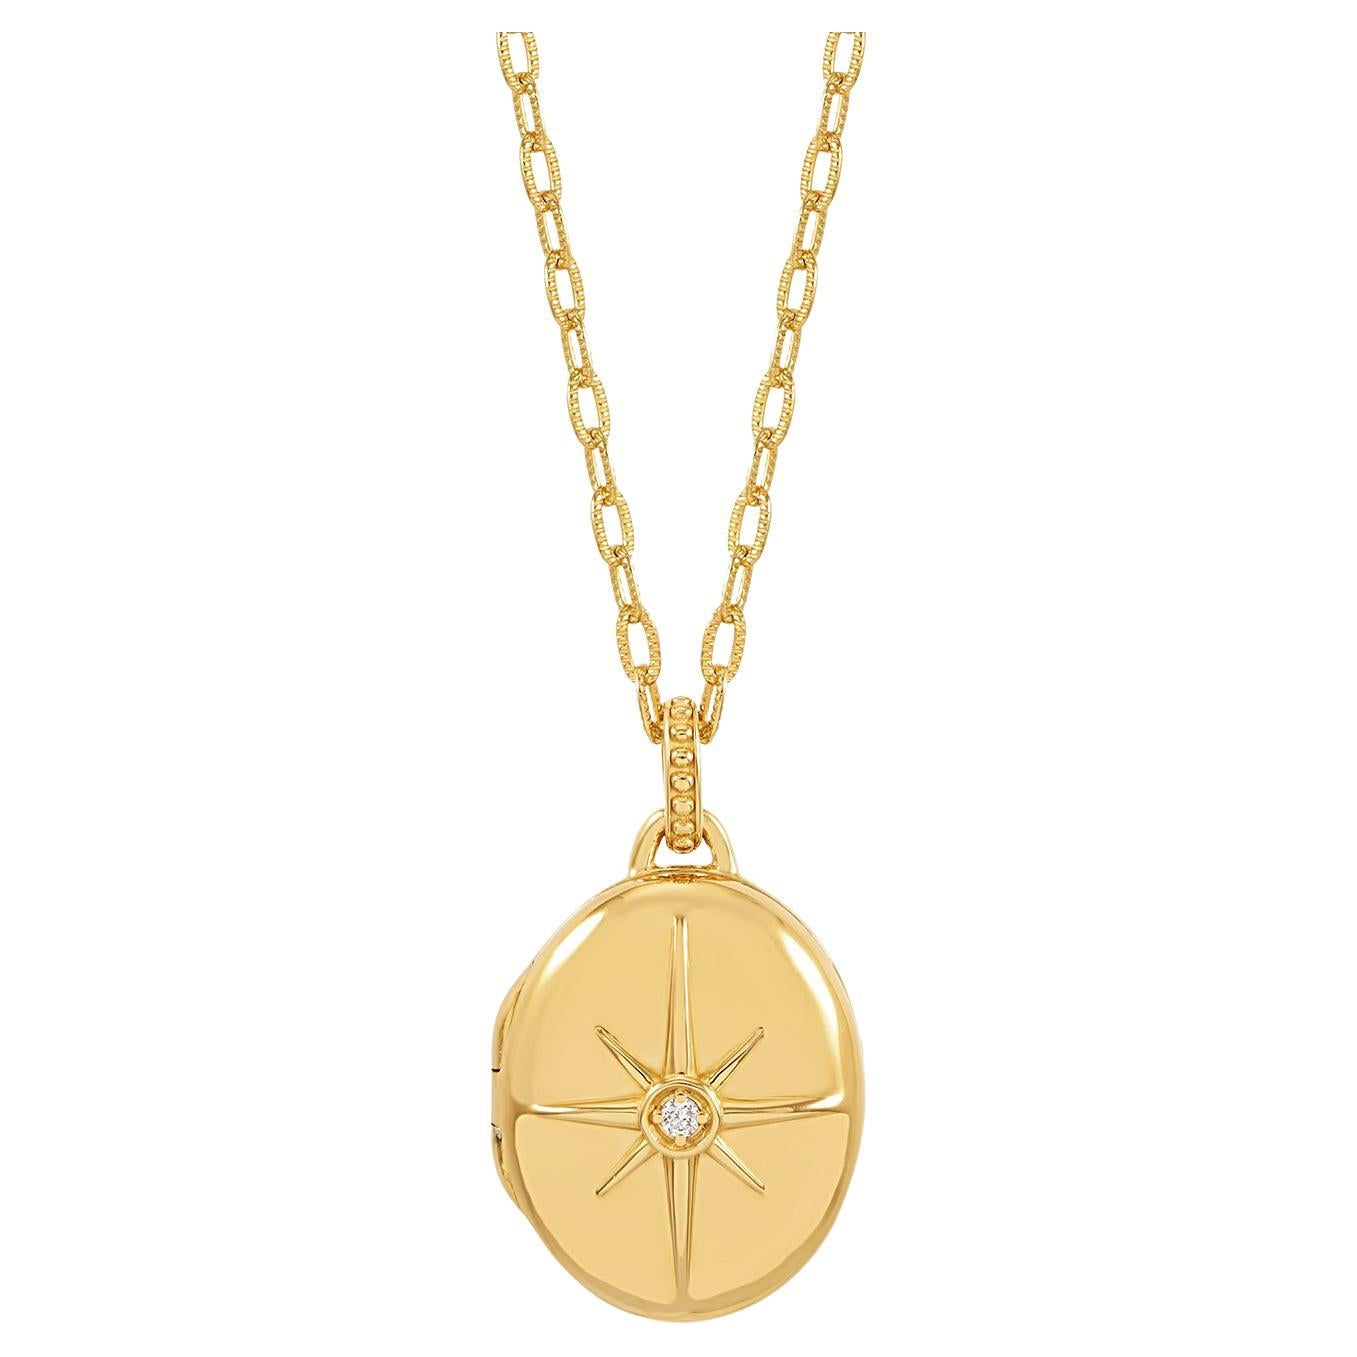 Médaillon ovale en or 18ct Vermeil avec étoile de diamant